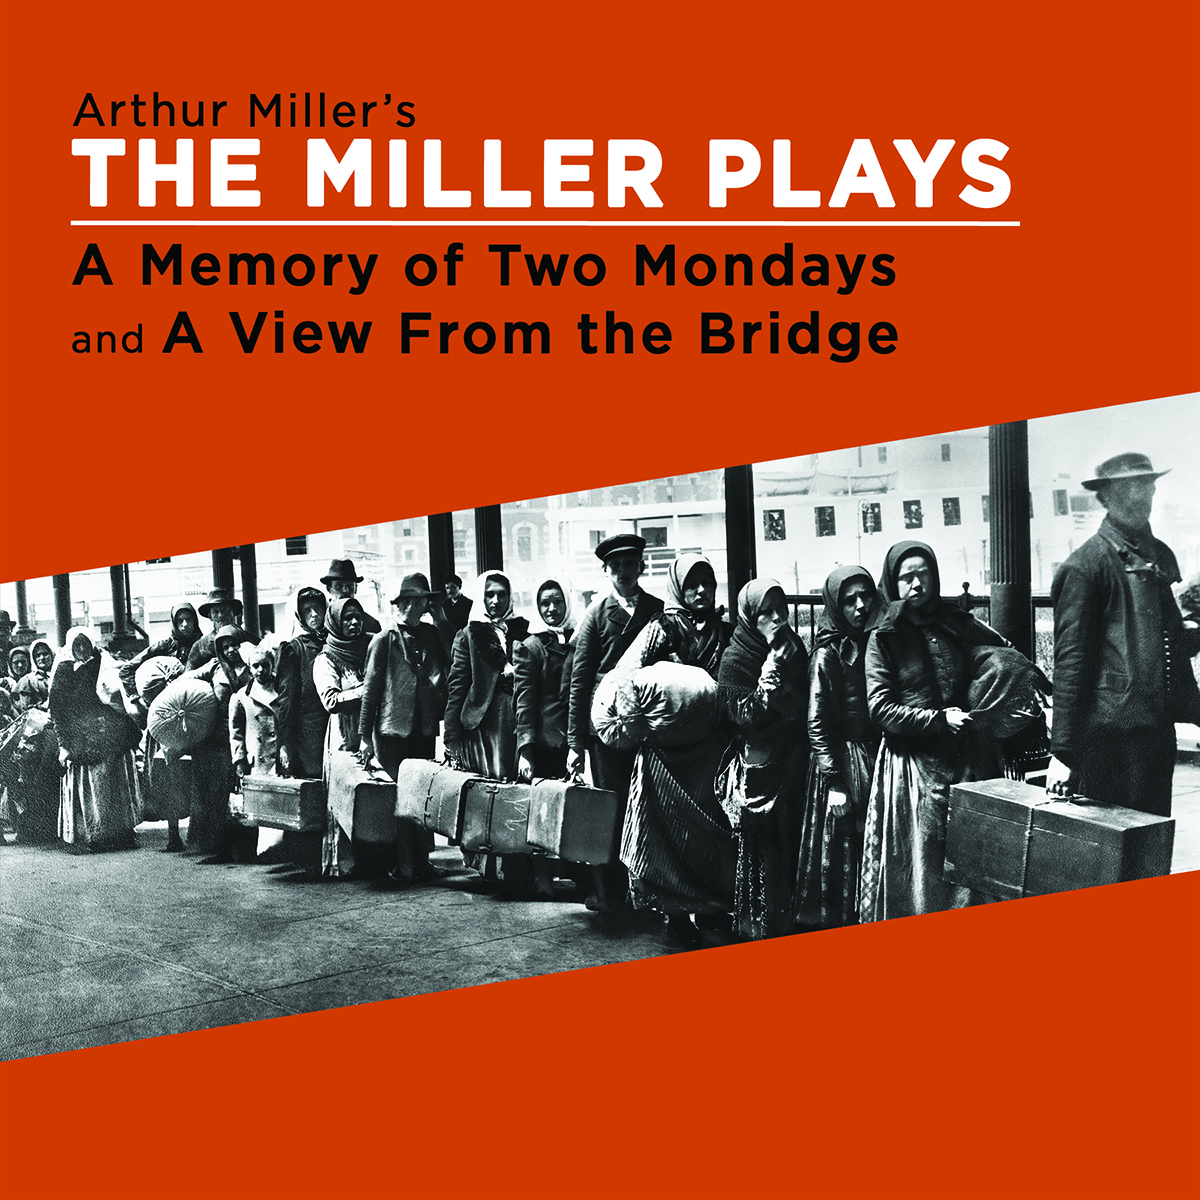 The Miller Plays @ Wharton Center